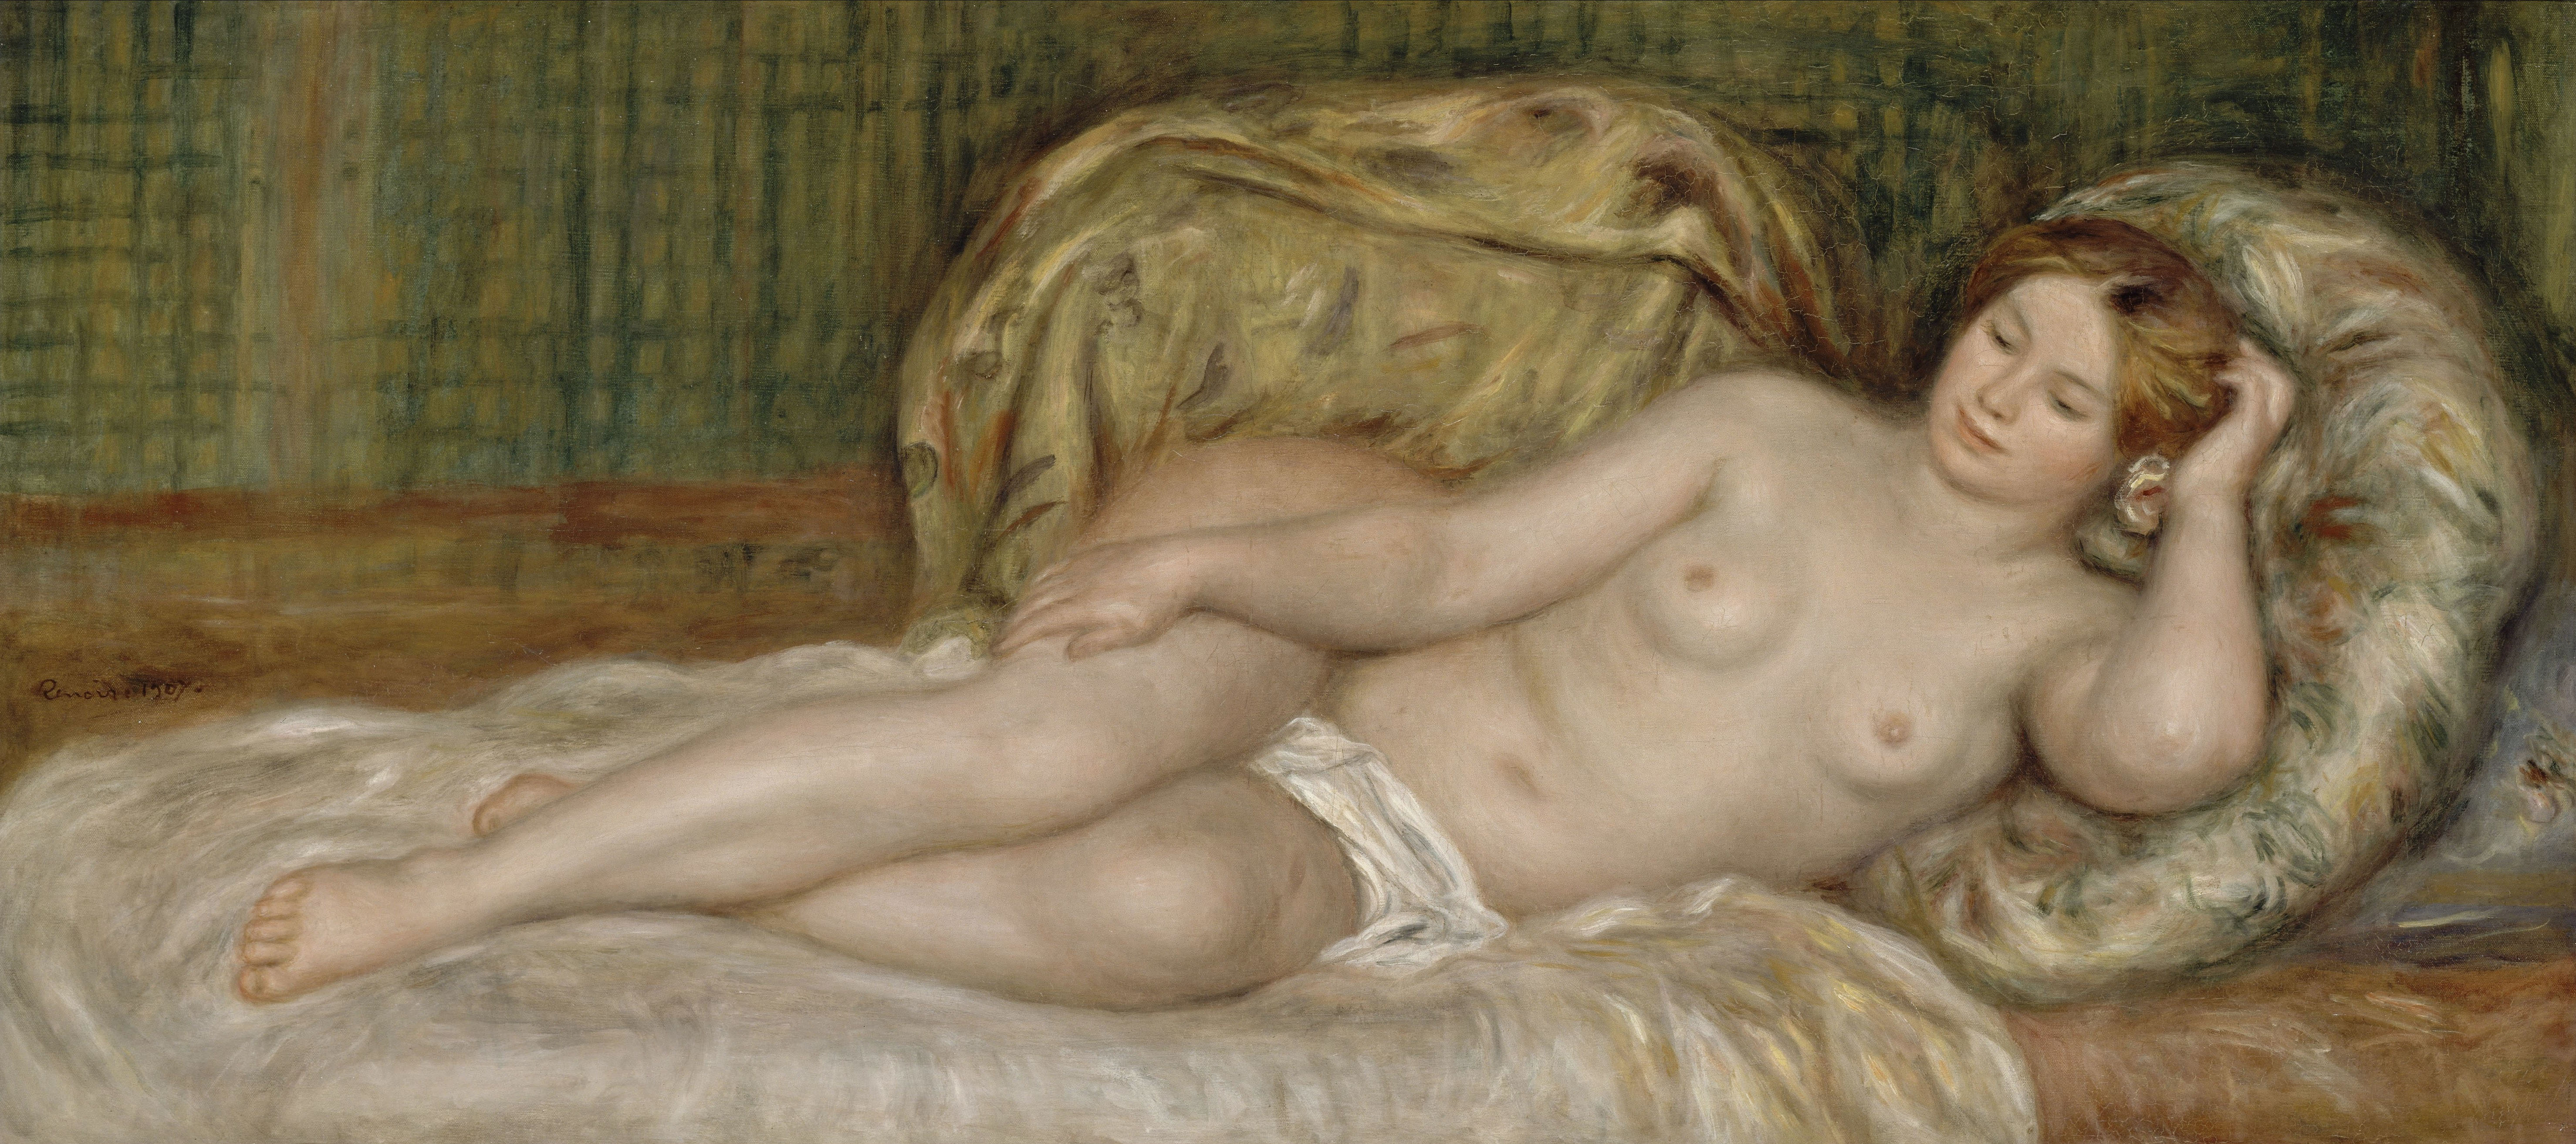 Ренуар. Обнаженная на подушках. 1907